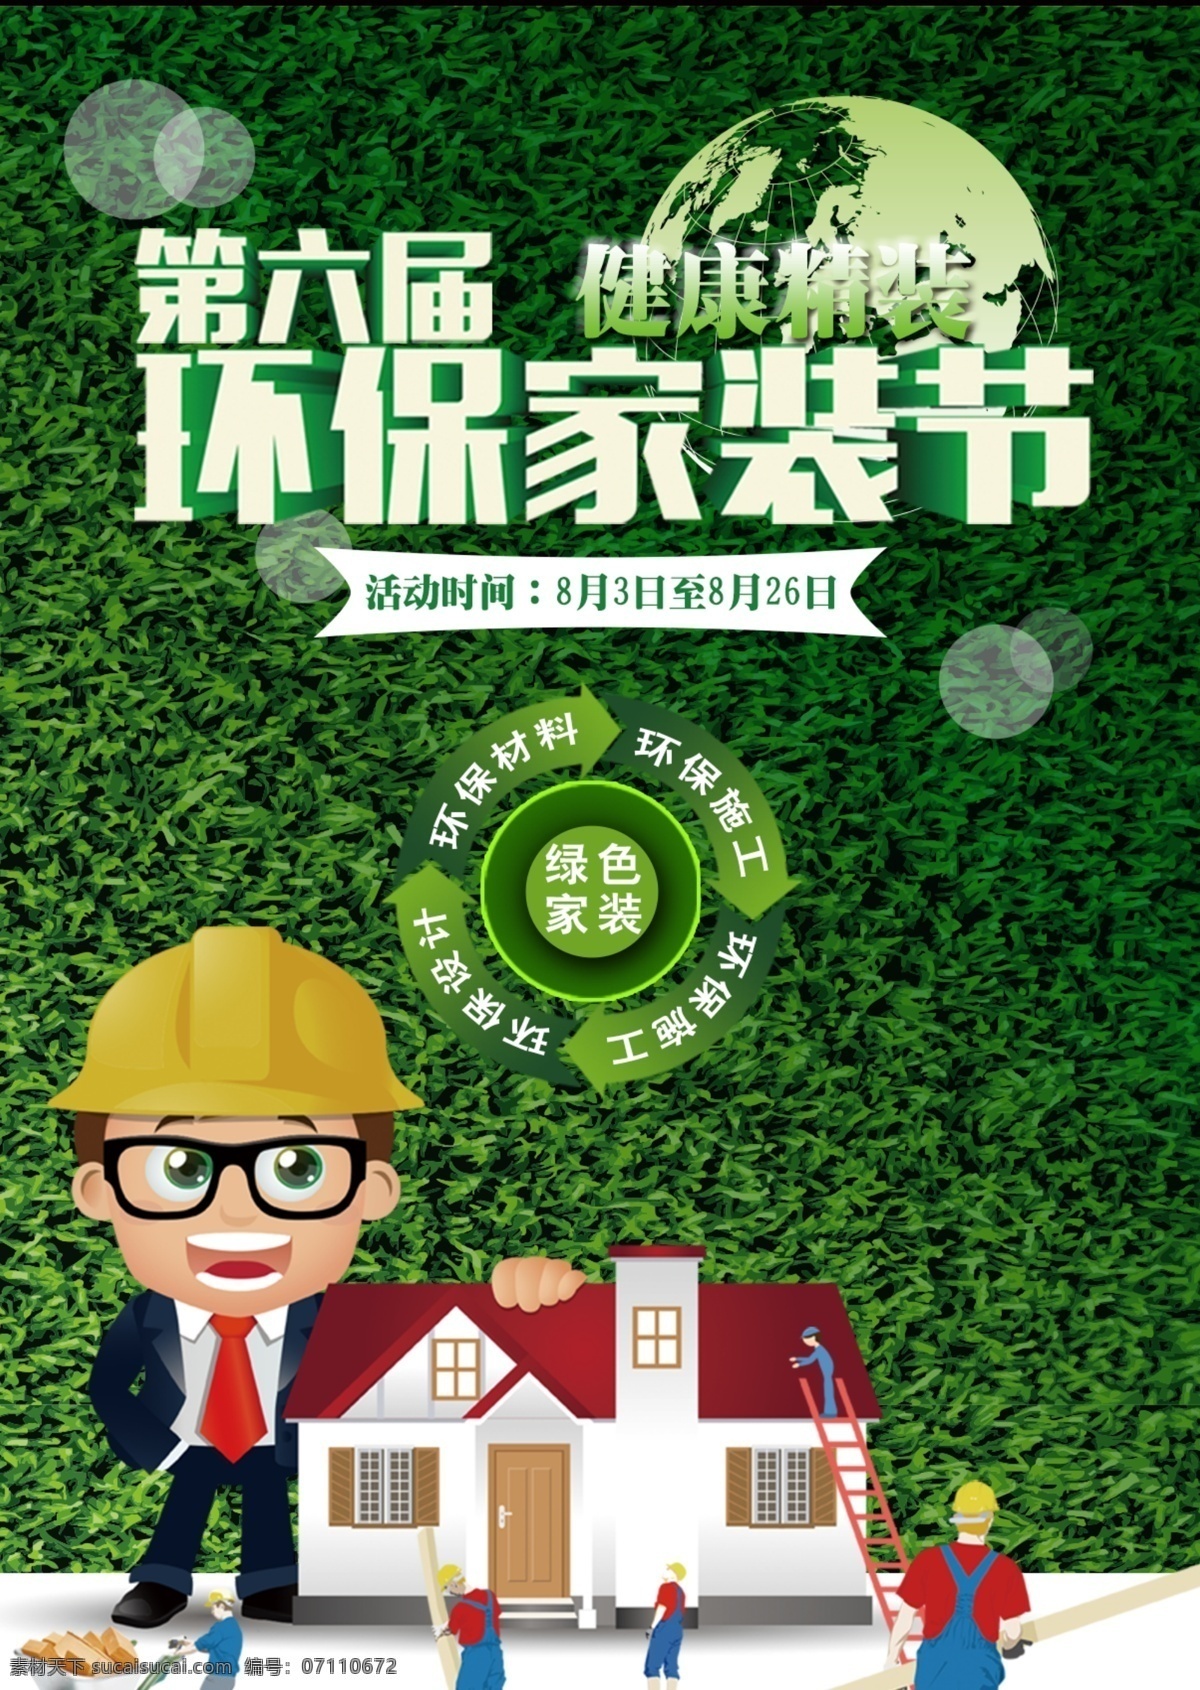 绿色 健康 环保 家装 节 海报 精装 第六届 健康精装 环保设计